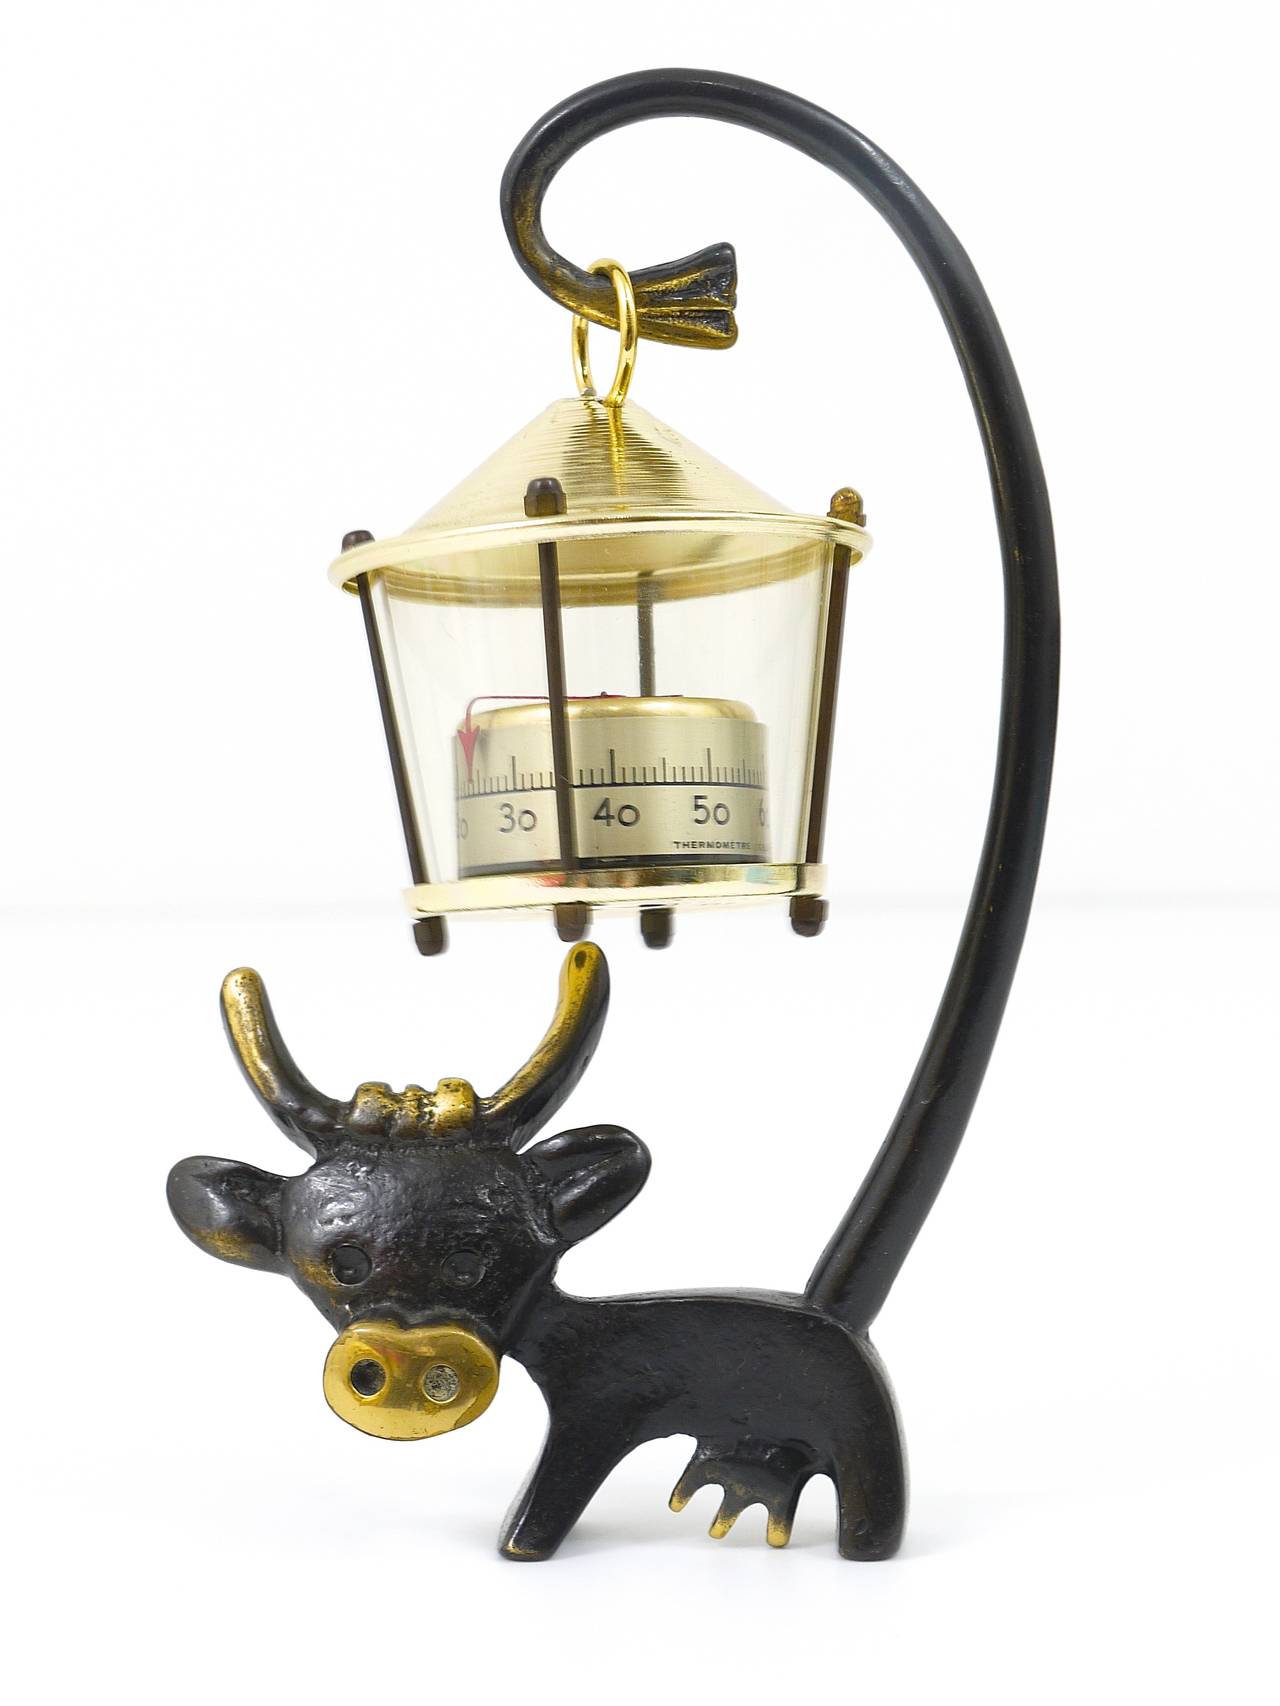 Ein charmantes skulpturales österreichisches Tischthermometer aus der Mitte des Jahrhunderts, das eine Kuh mit einem Thermometer in Form einer Laterne zeigt. Ein humorvoller Entwurf von Walter Bosse, ausgeführt von Hertha Baller Austria in den